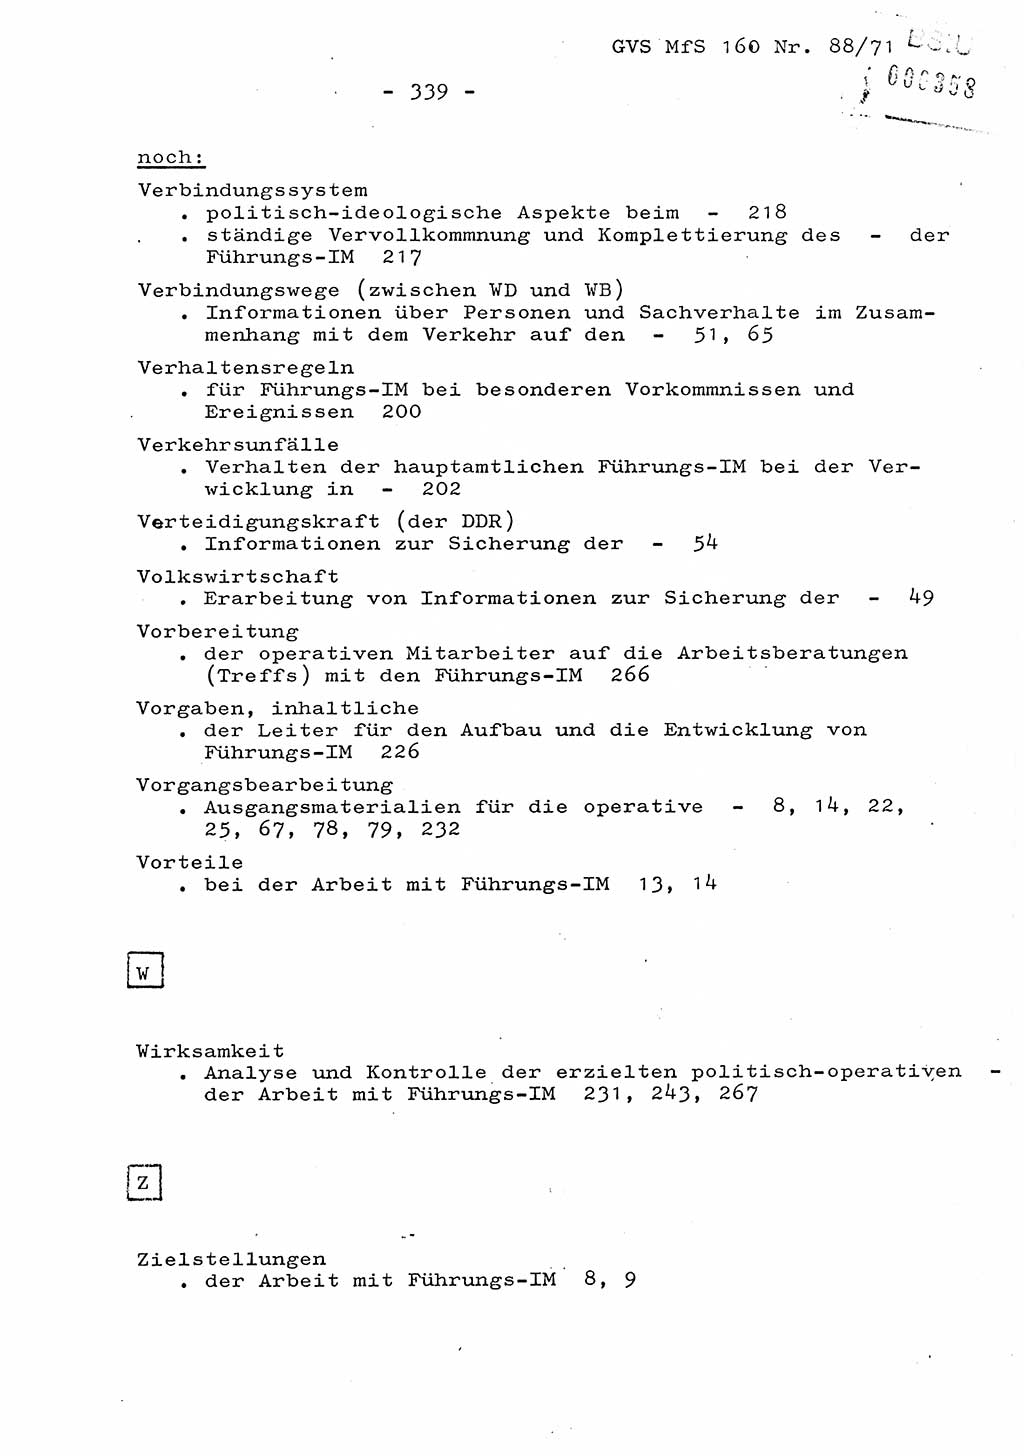 Dissertation Oberstleutnant Josef Schwarz (BV Schwerin), Major Fritz Amm (JHS), Hauptmann Peter Gräßler (JHS), Ministerium für Staatssicherheit (MfS) [Deutsche Demokratische Republik (DDR)], Juristische Hochschule (JHS), Geheime Verschlußsache (GVS) 160-88/71, Potsdam 1972, Seite 339 (Diss. MfS DDR JHS GVS 160-88/71 1972, S. 339)